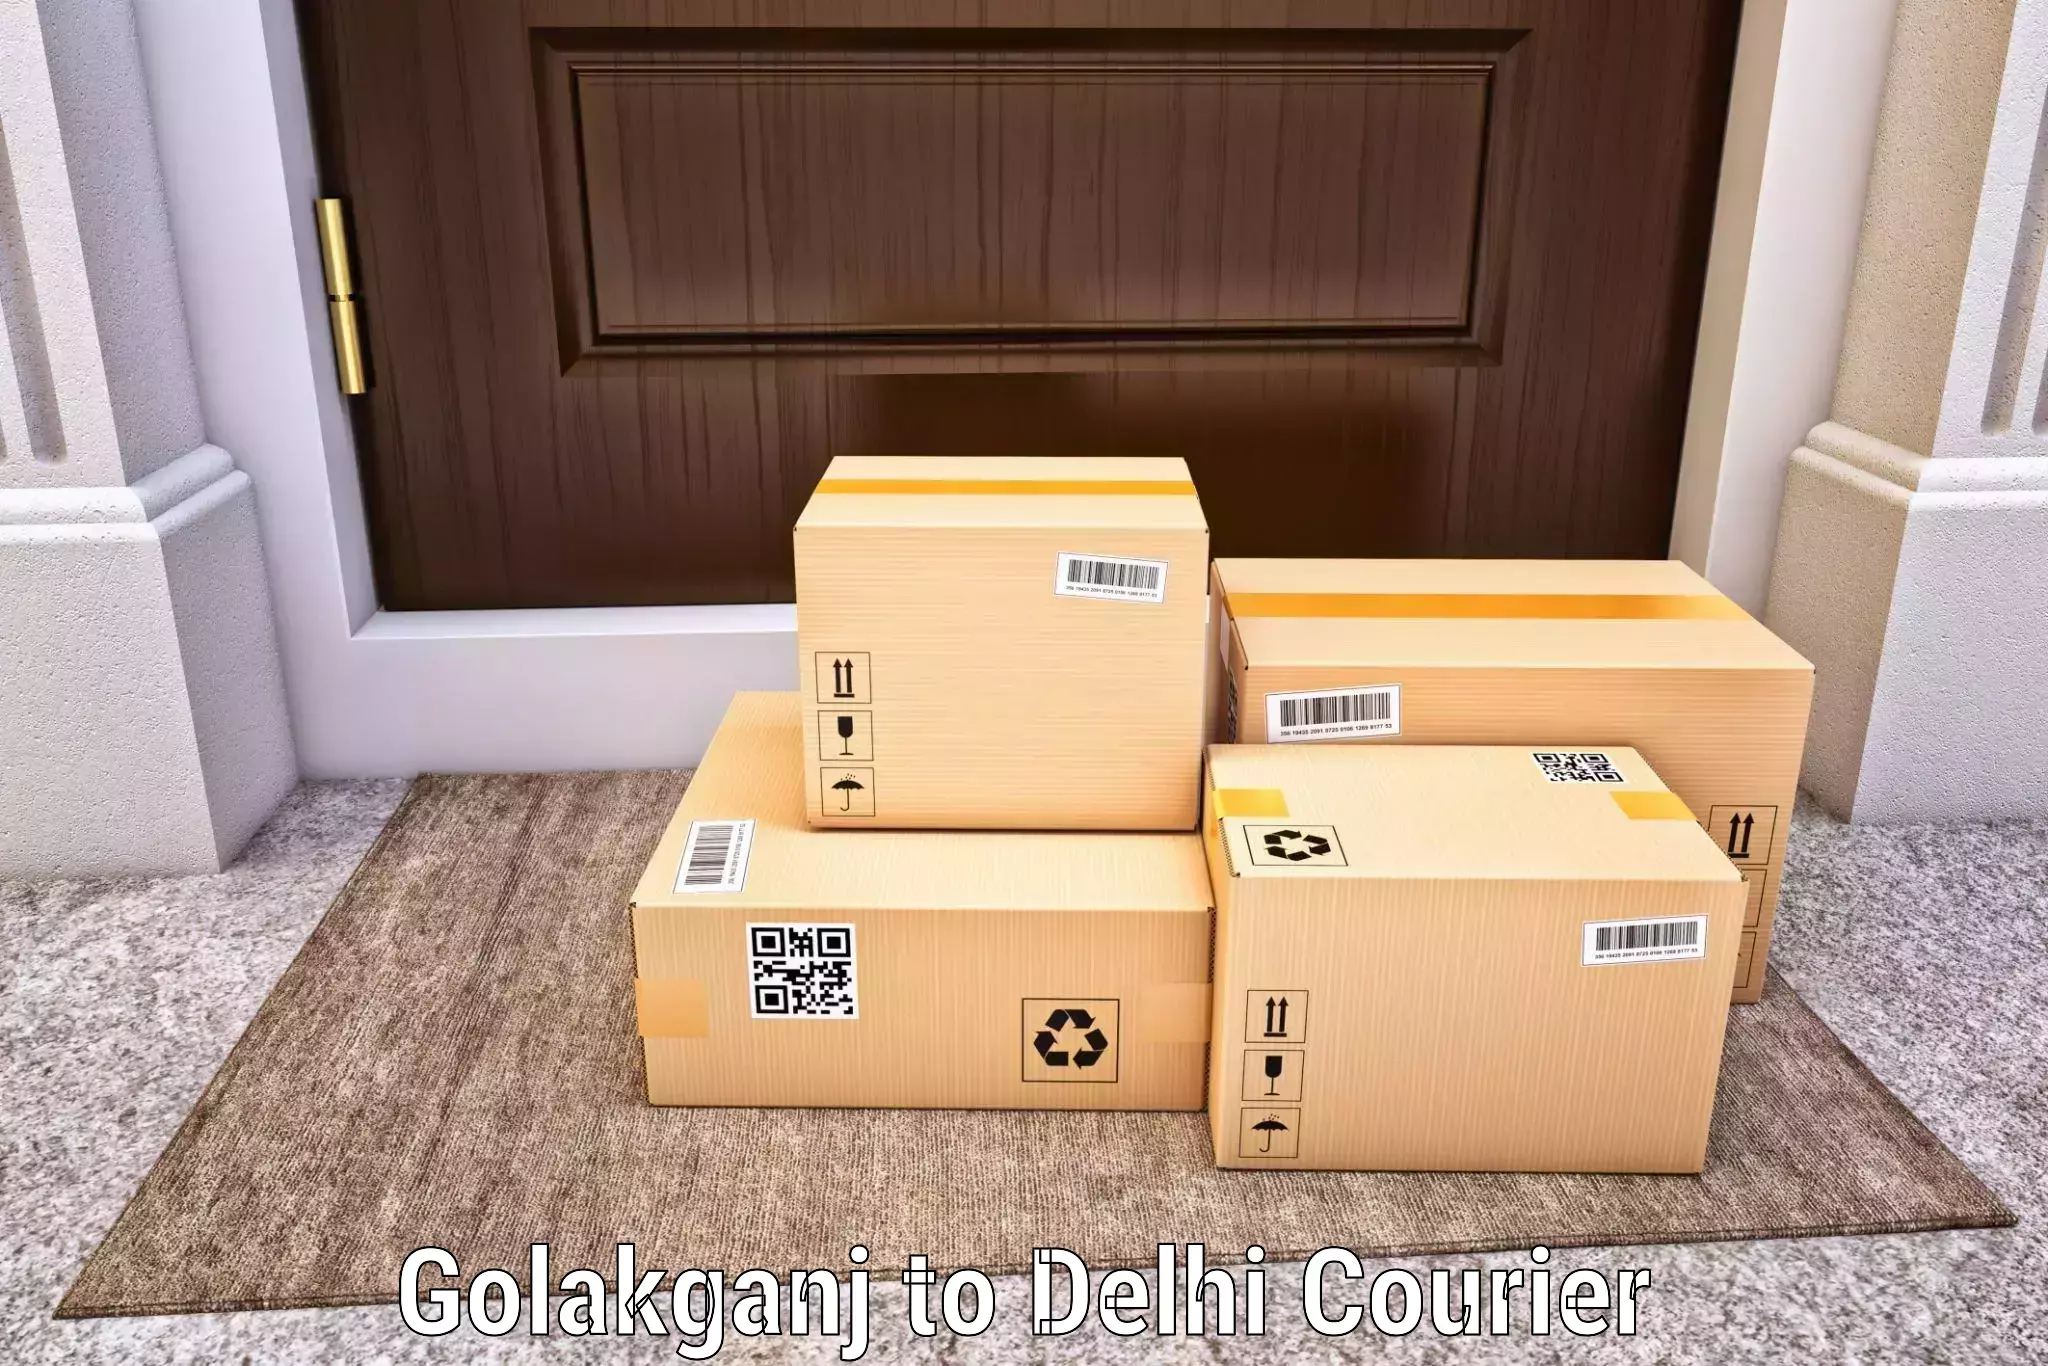 Multi-service courier options Golakganj to Delhi